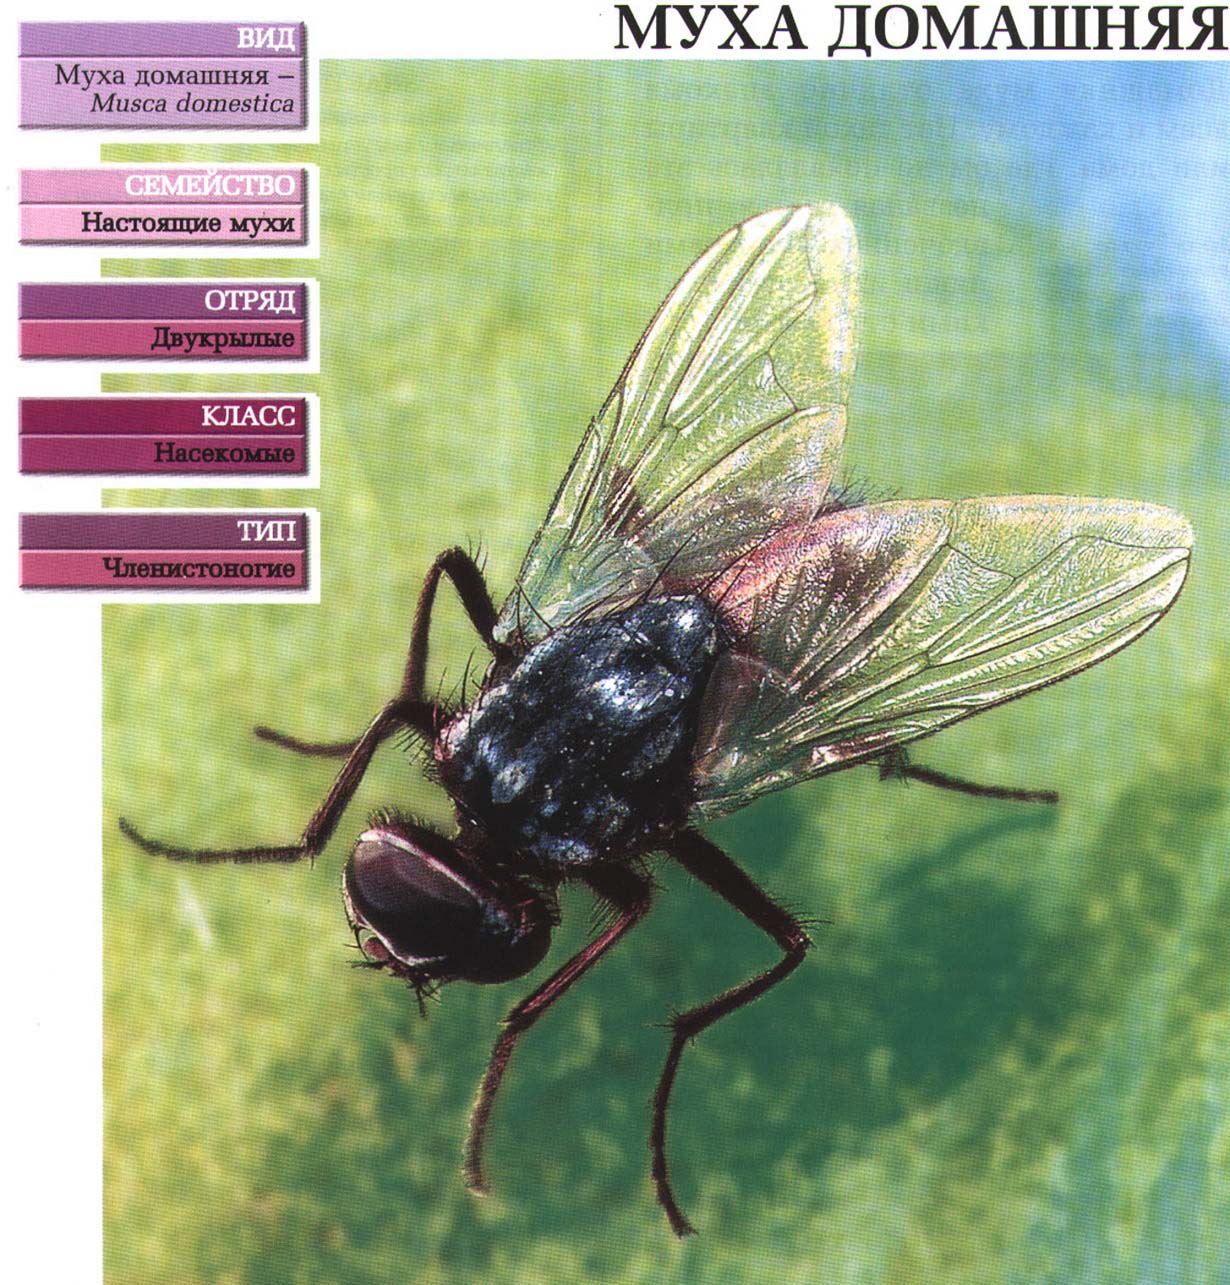 Систематика (научная классификация) мухи домашней. Musca domestica.